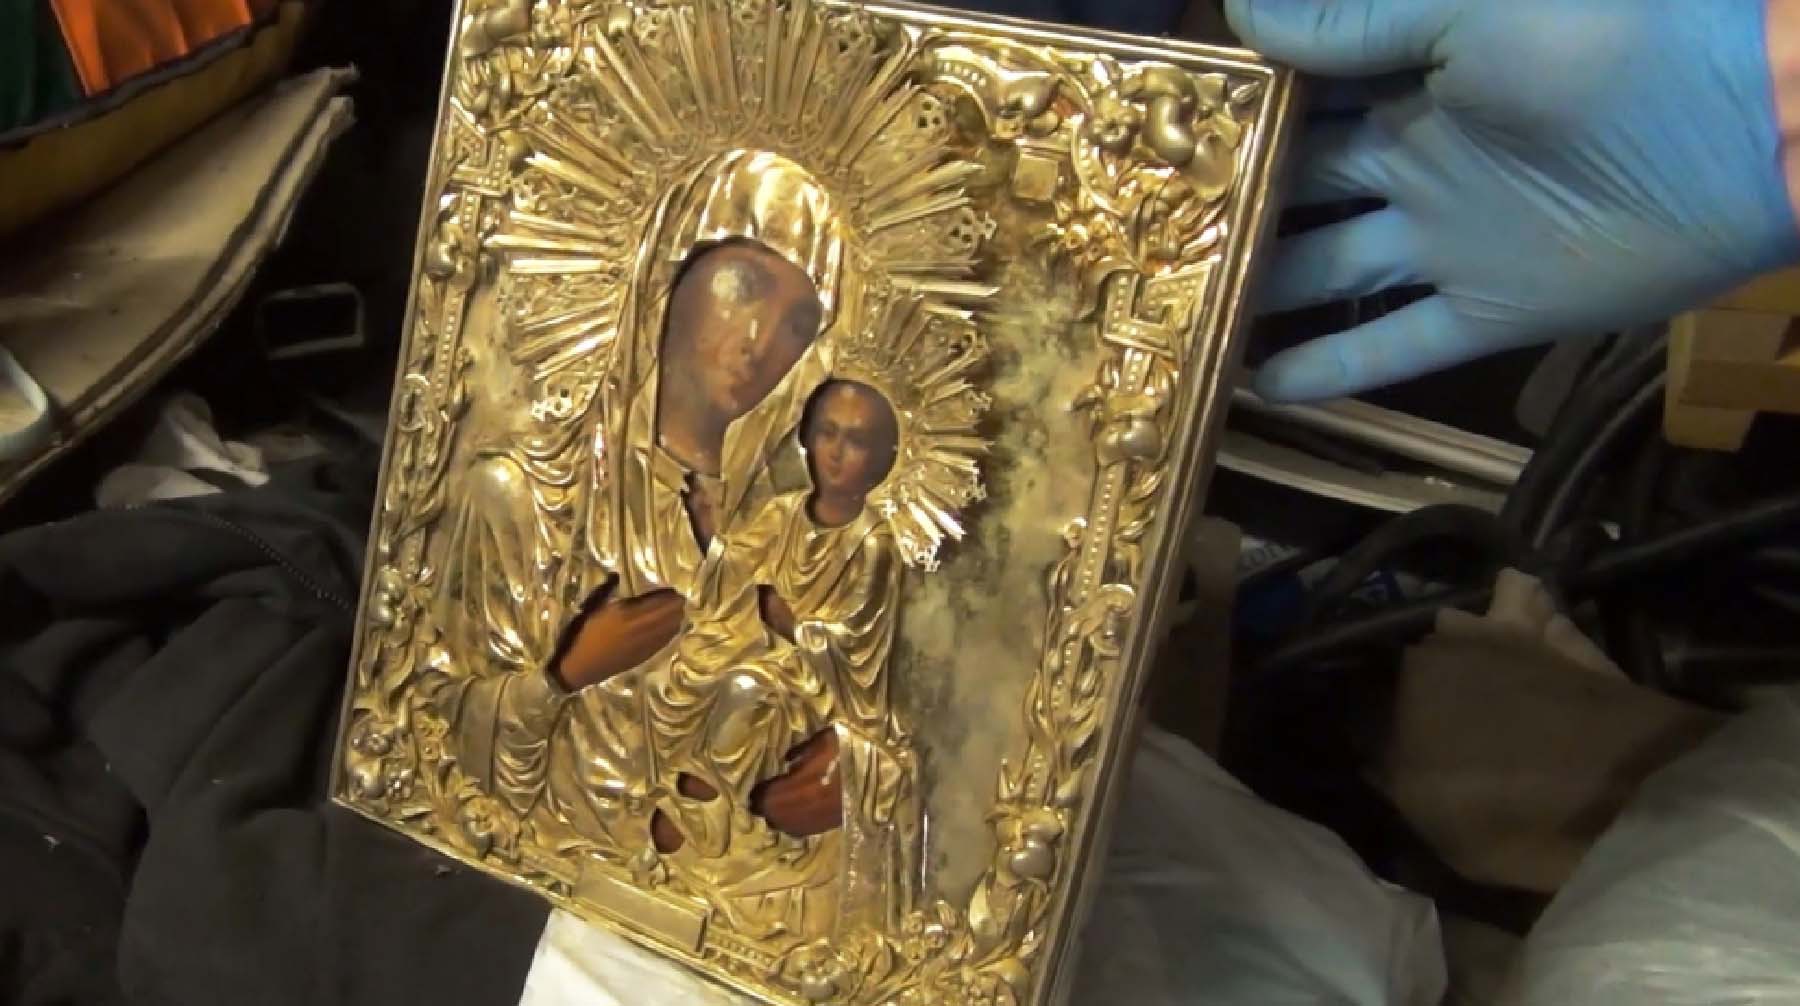 Иверская икона Божией Матери, подаренная Иверскому монастырю Владимиром Путиным